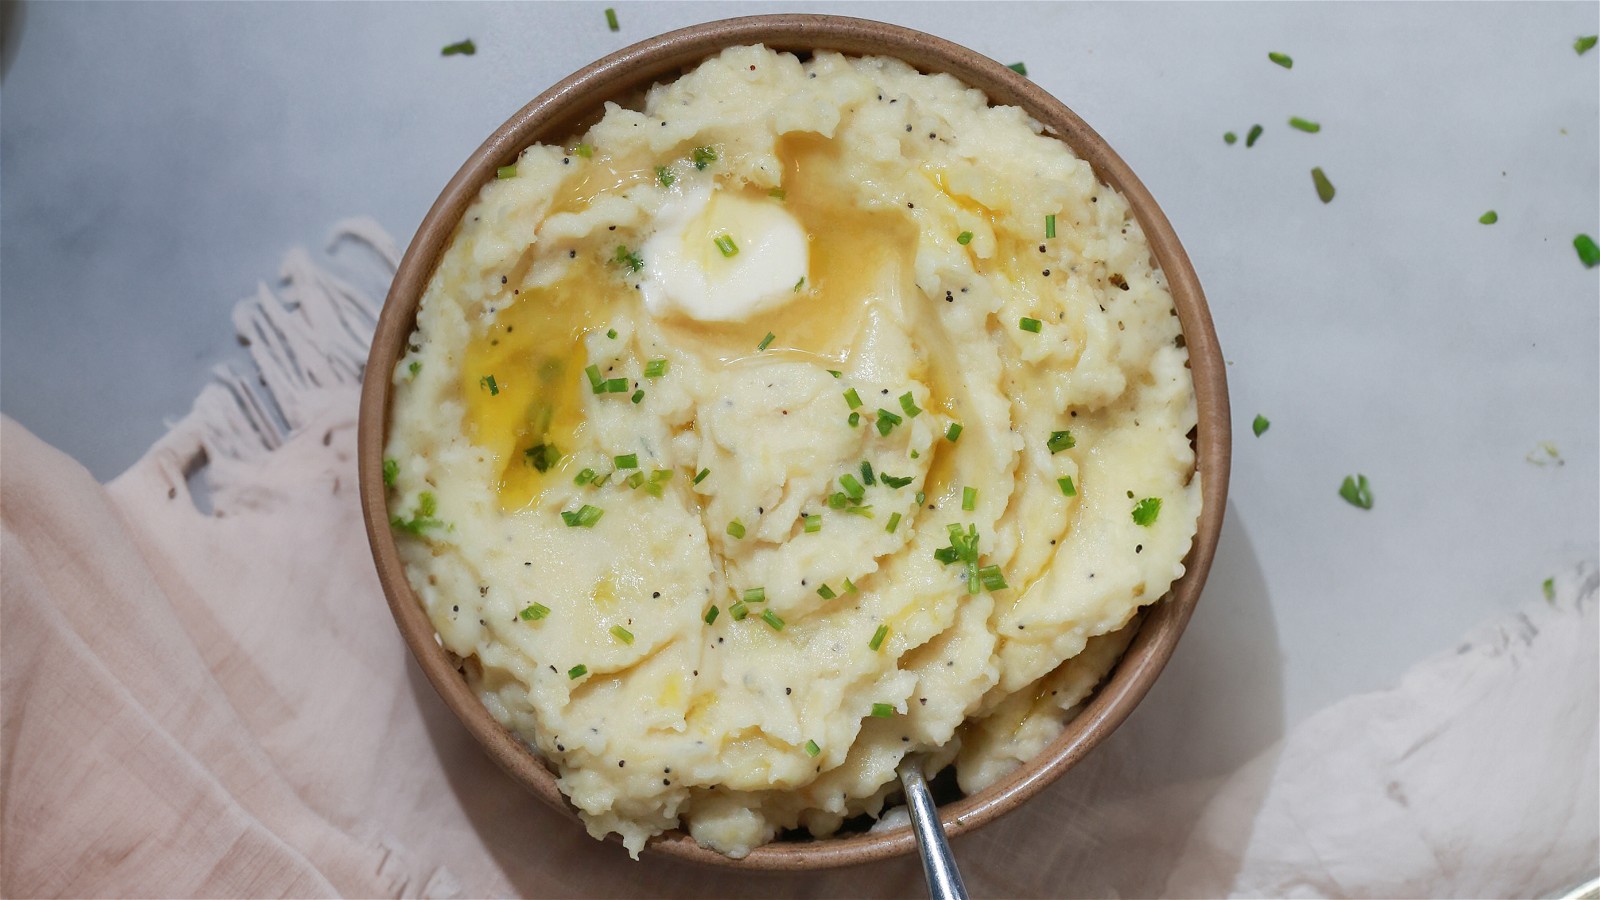 Image of Cheezio Mashed Potatoes